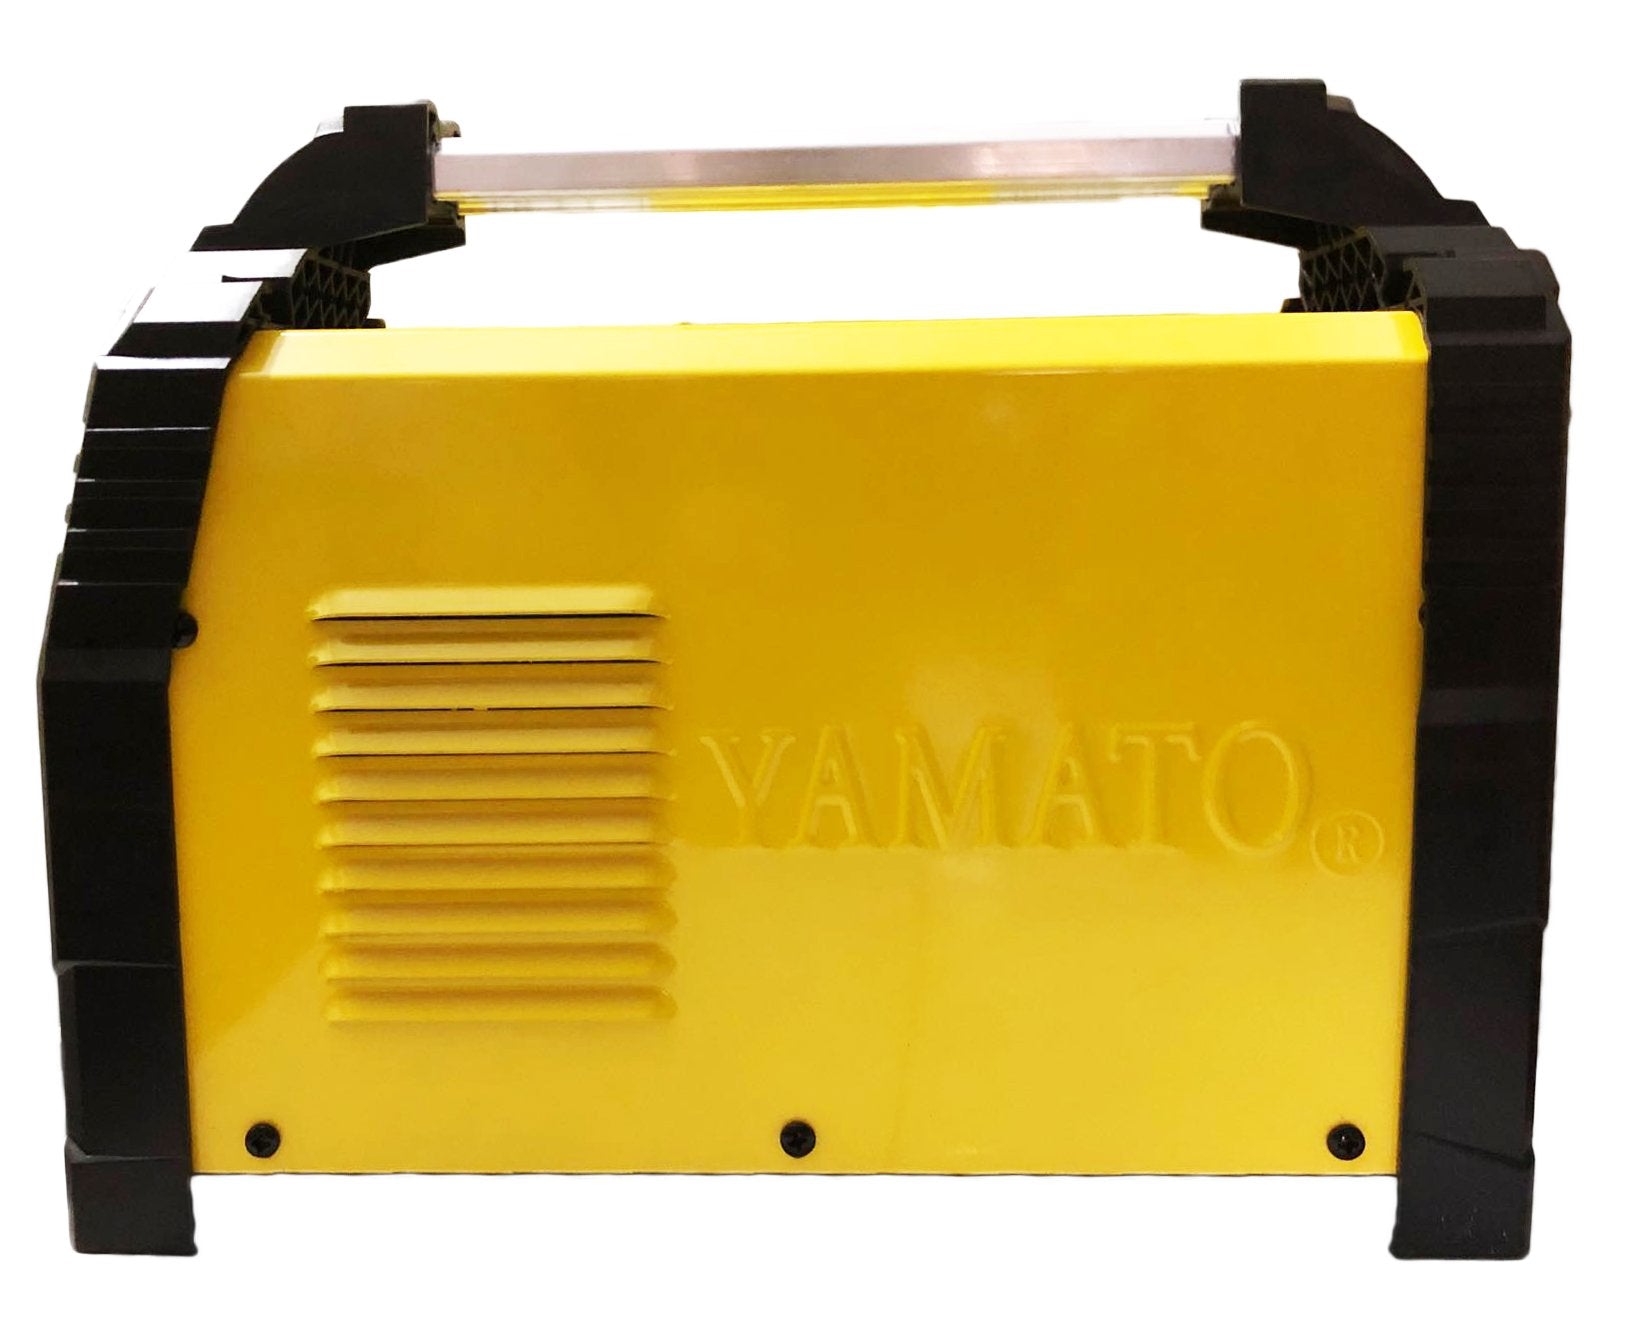 Yamato MMA 200 DC Inverter Welding Machine - ToolsSavvy.ph